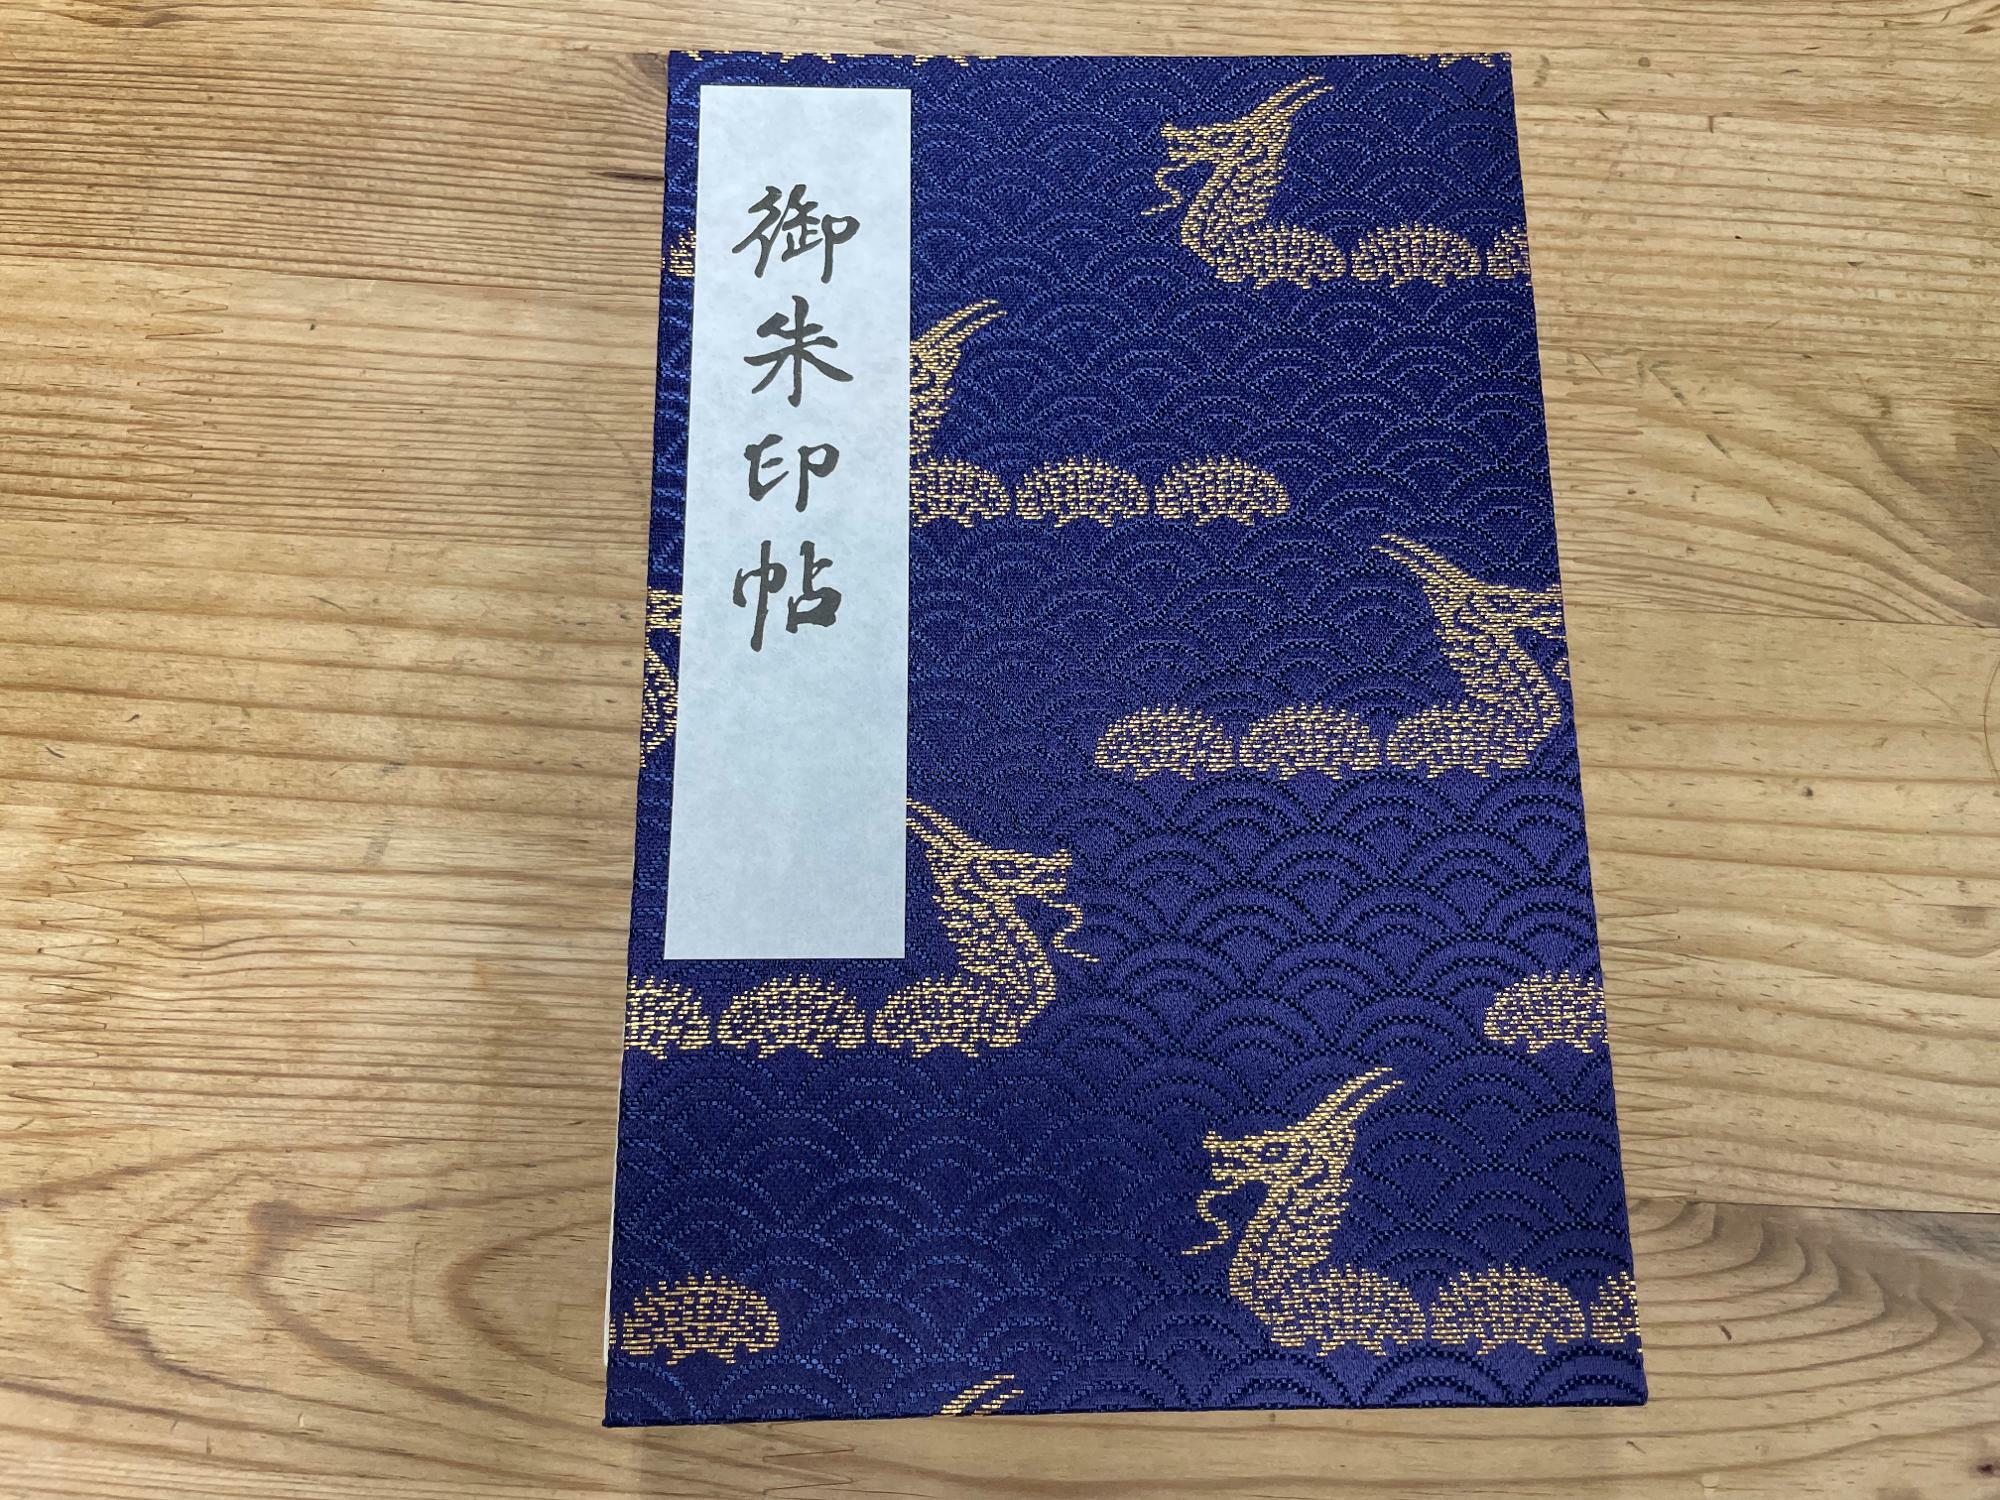 浅草寺で購入した御朱印帳。これ以外に雷門のデザインのものなどもあった